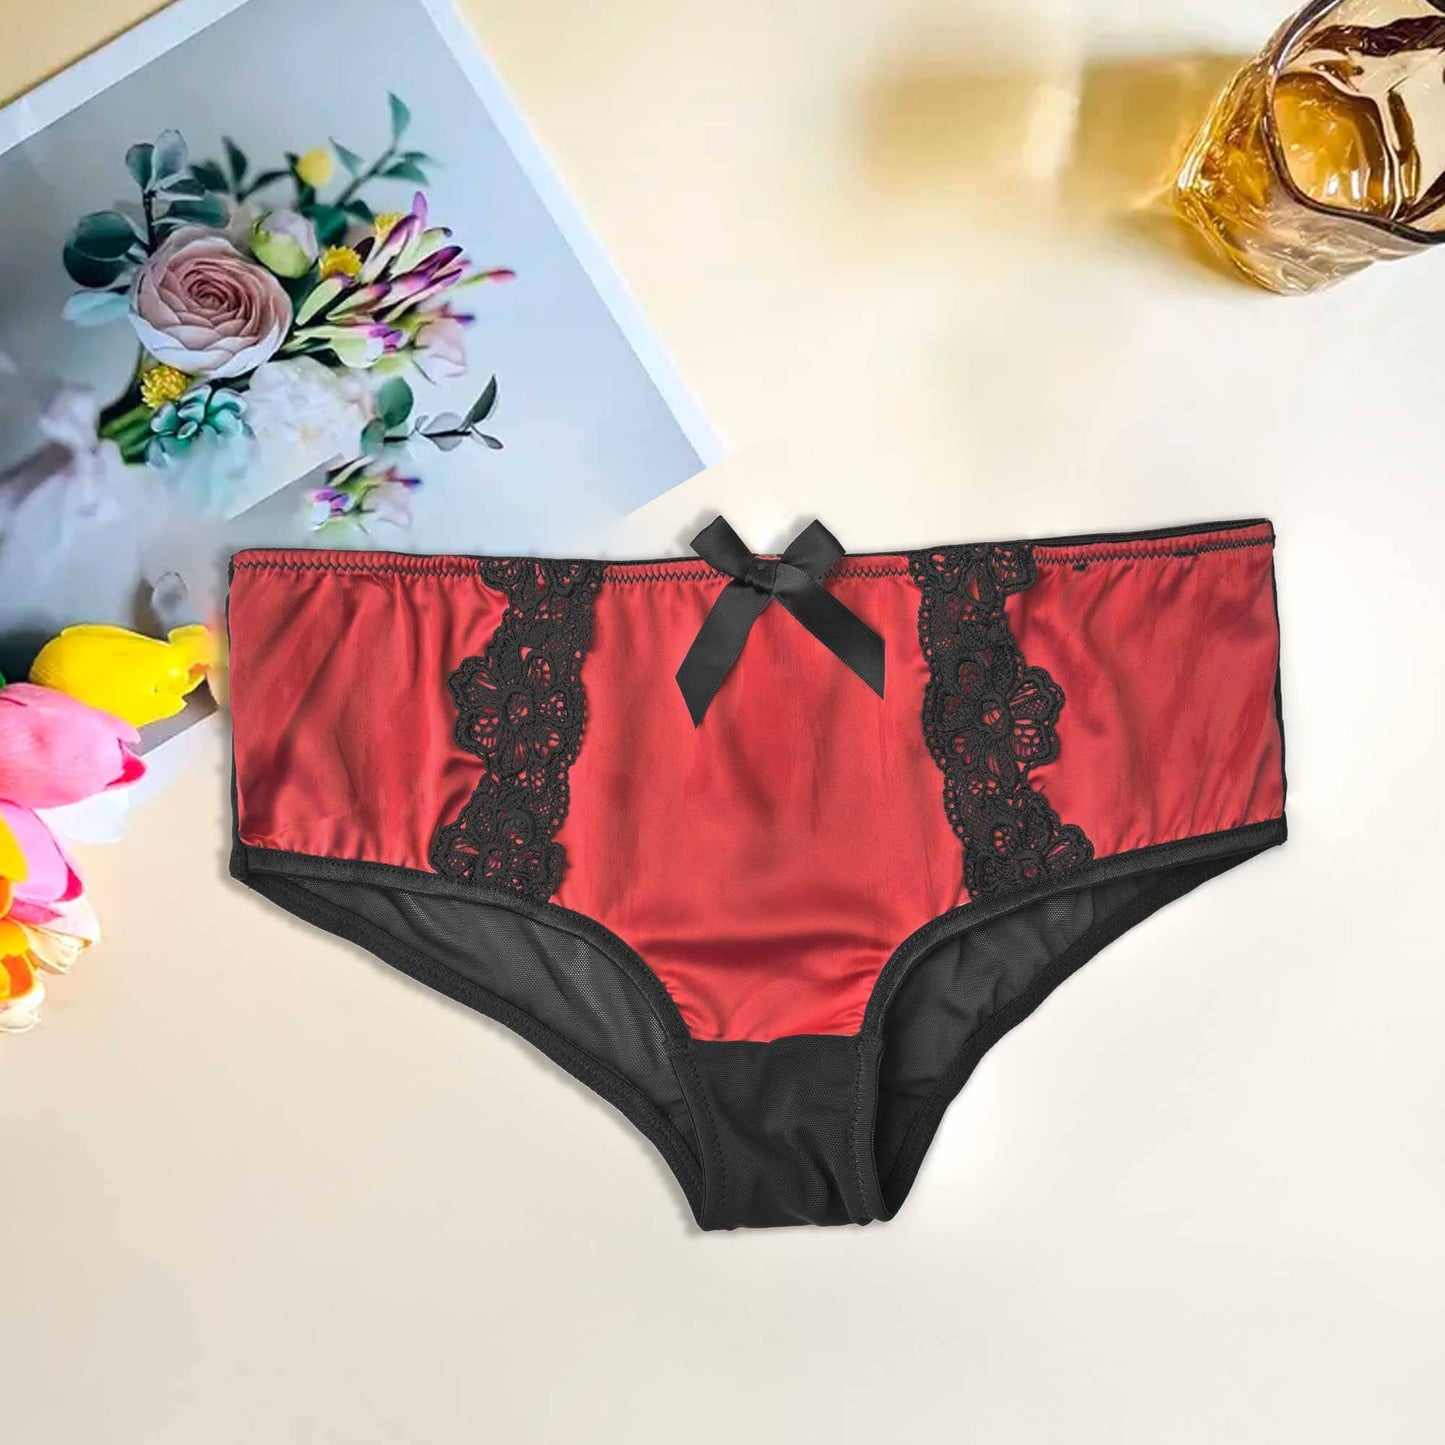 Mpz Women's Fancy Lace Design Silk Underwear Women's Lingerie RAM Red M 